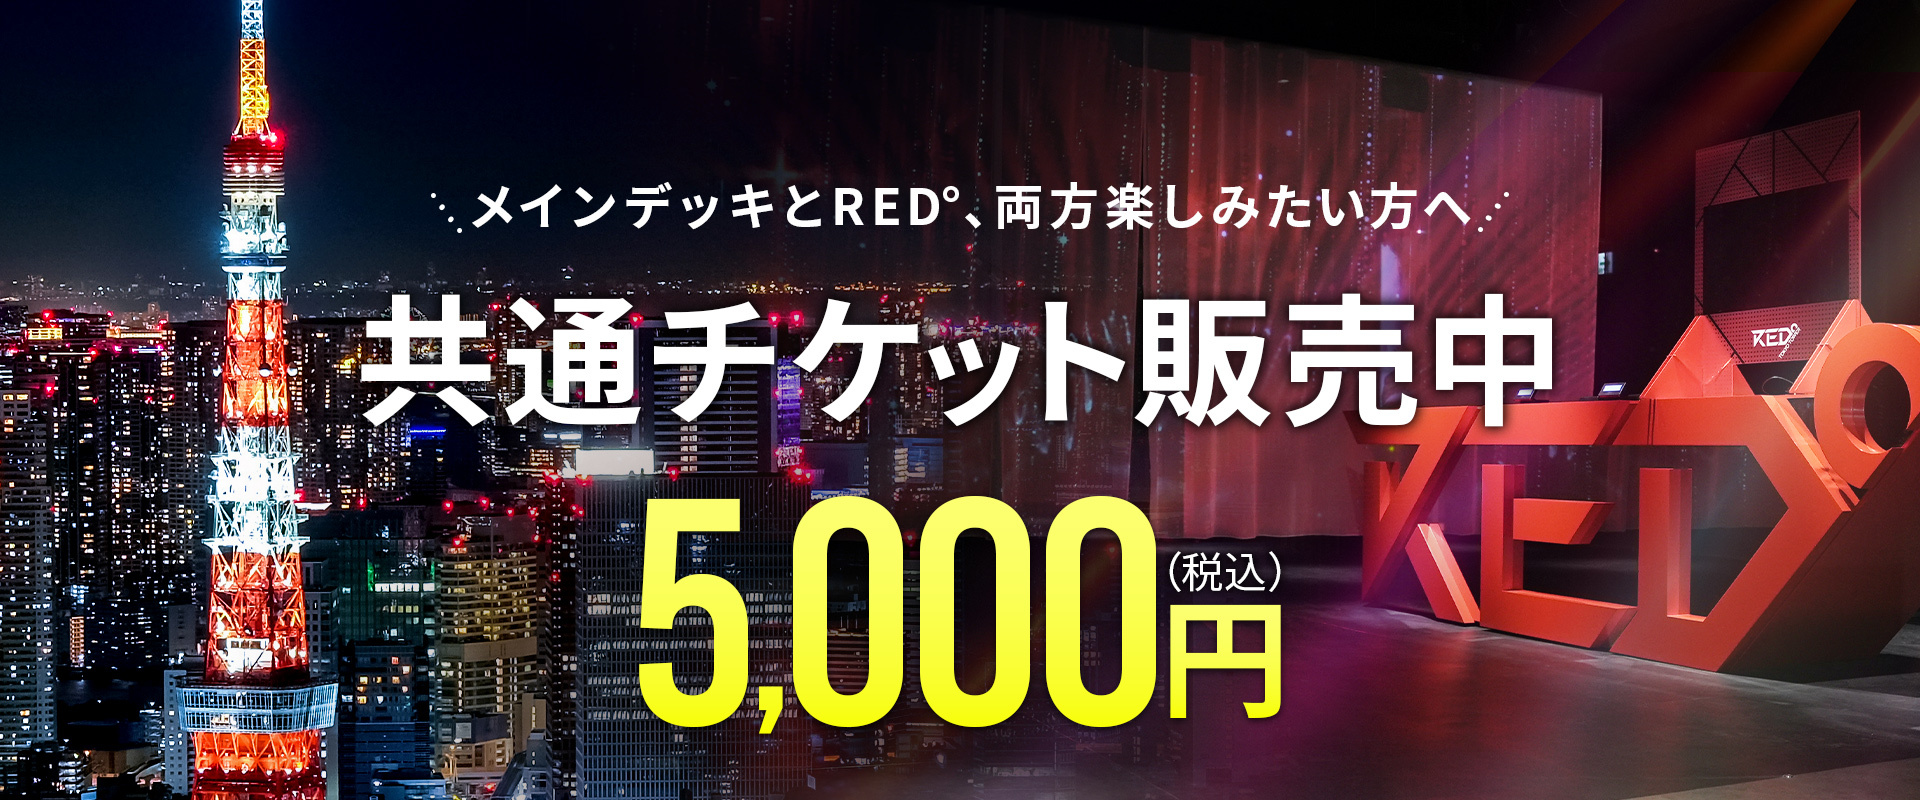 도쿄 타워×RED° TOKYO TOWER 공통 티켓 판매 개시